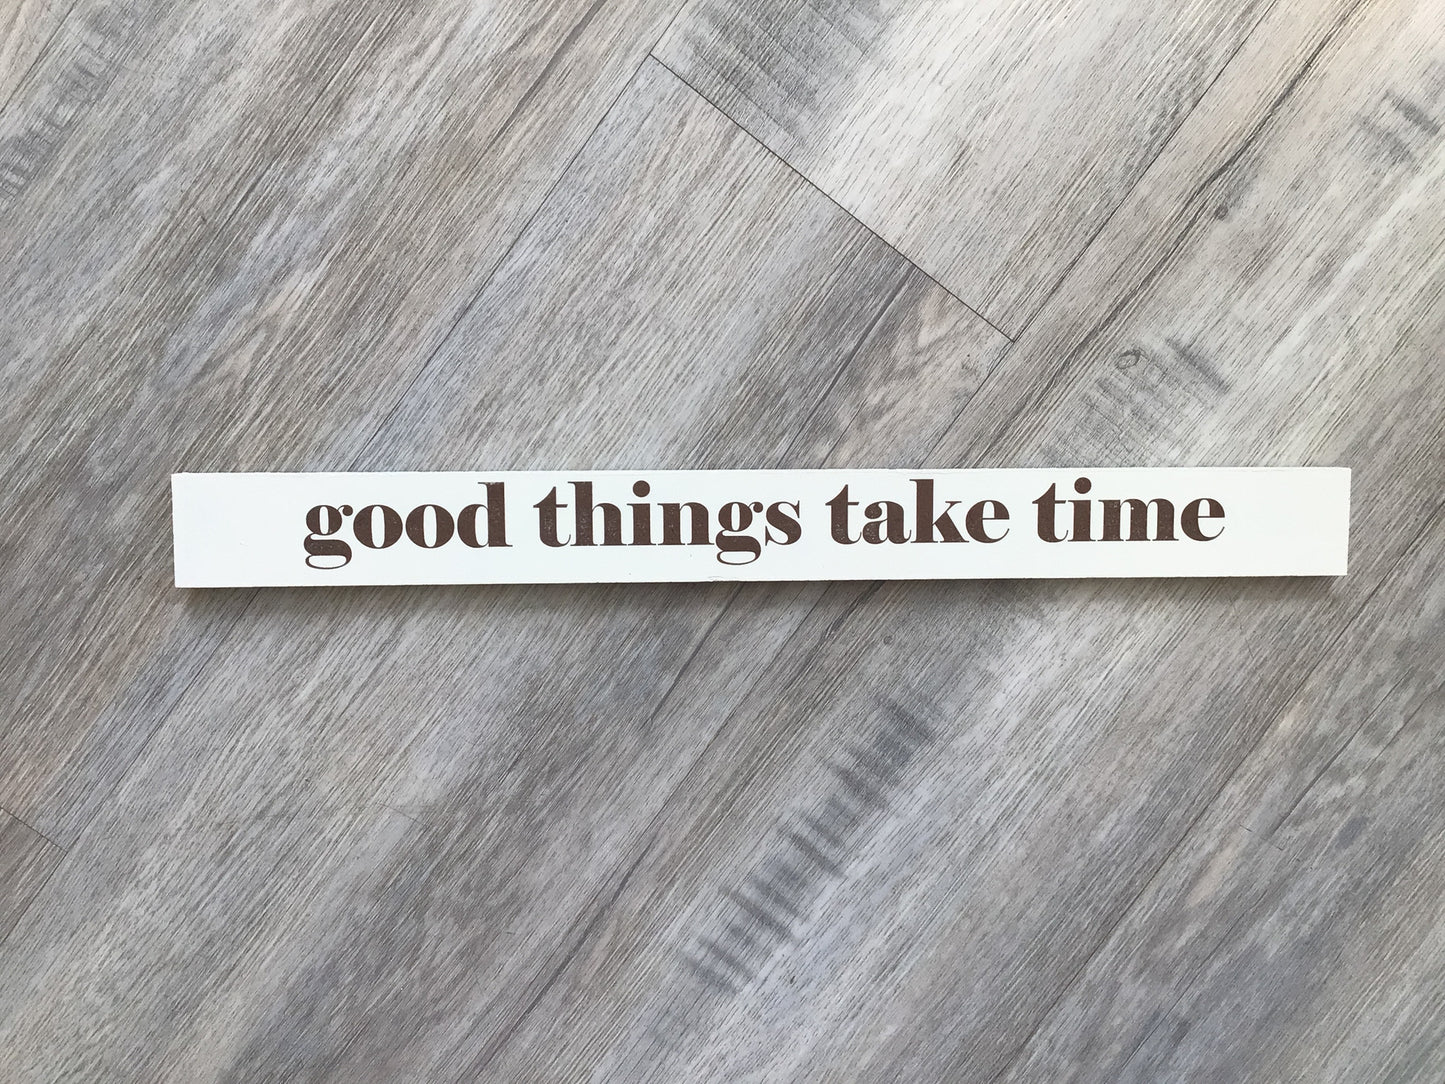 FAS-17 “Good things take time” Shelf Sitter